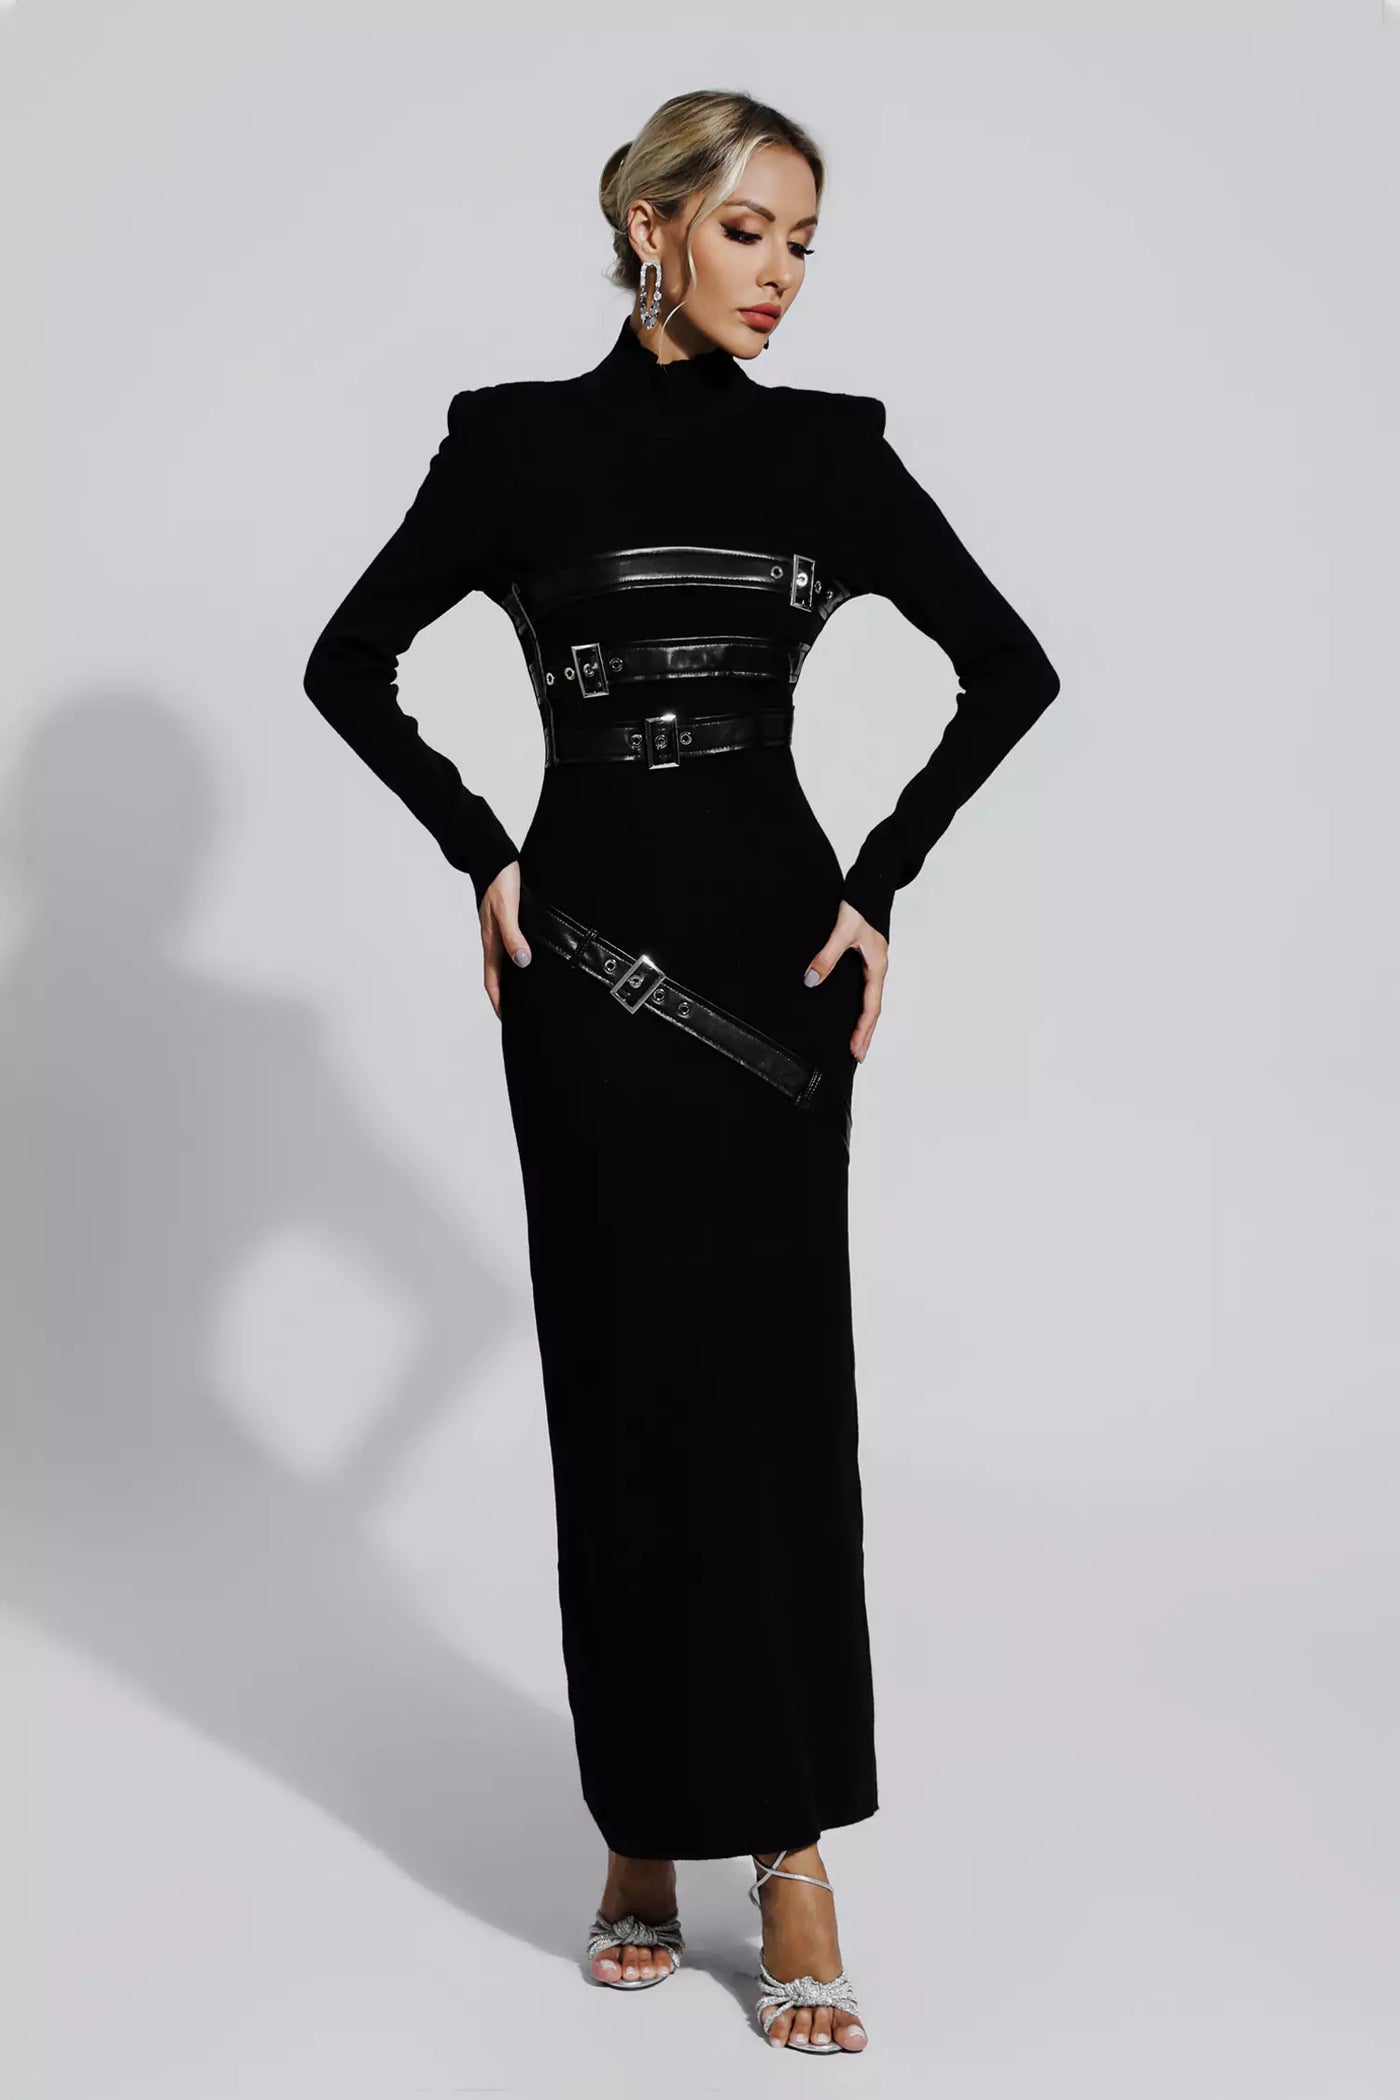 Eva - Luxe Zwarte Maxi-jurk van PU-Leer